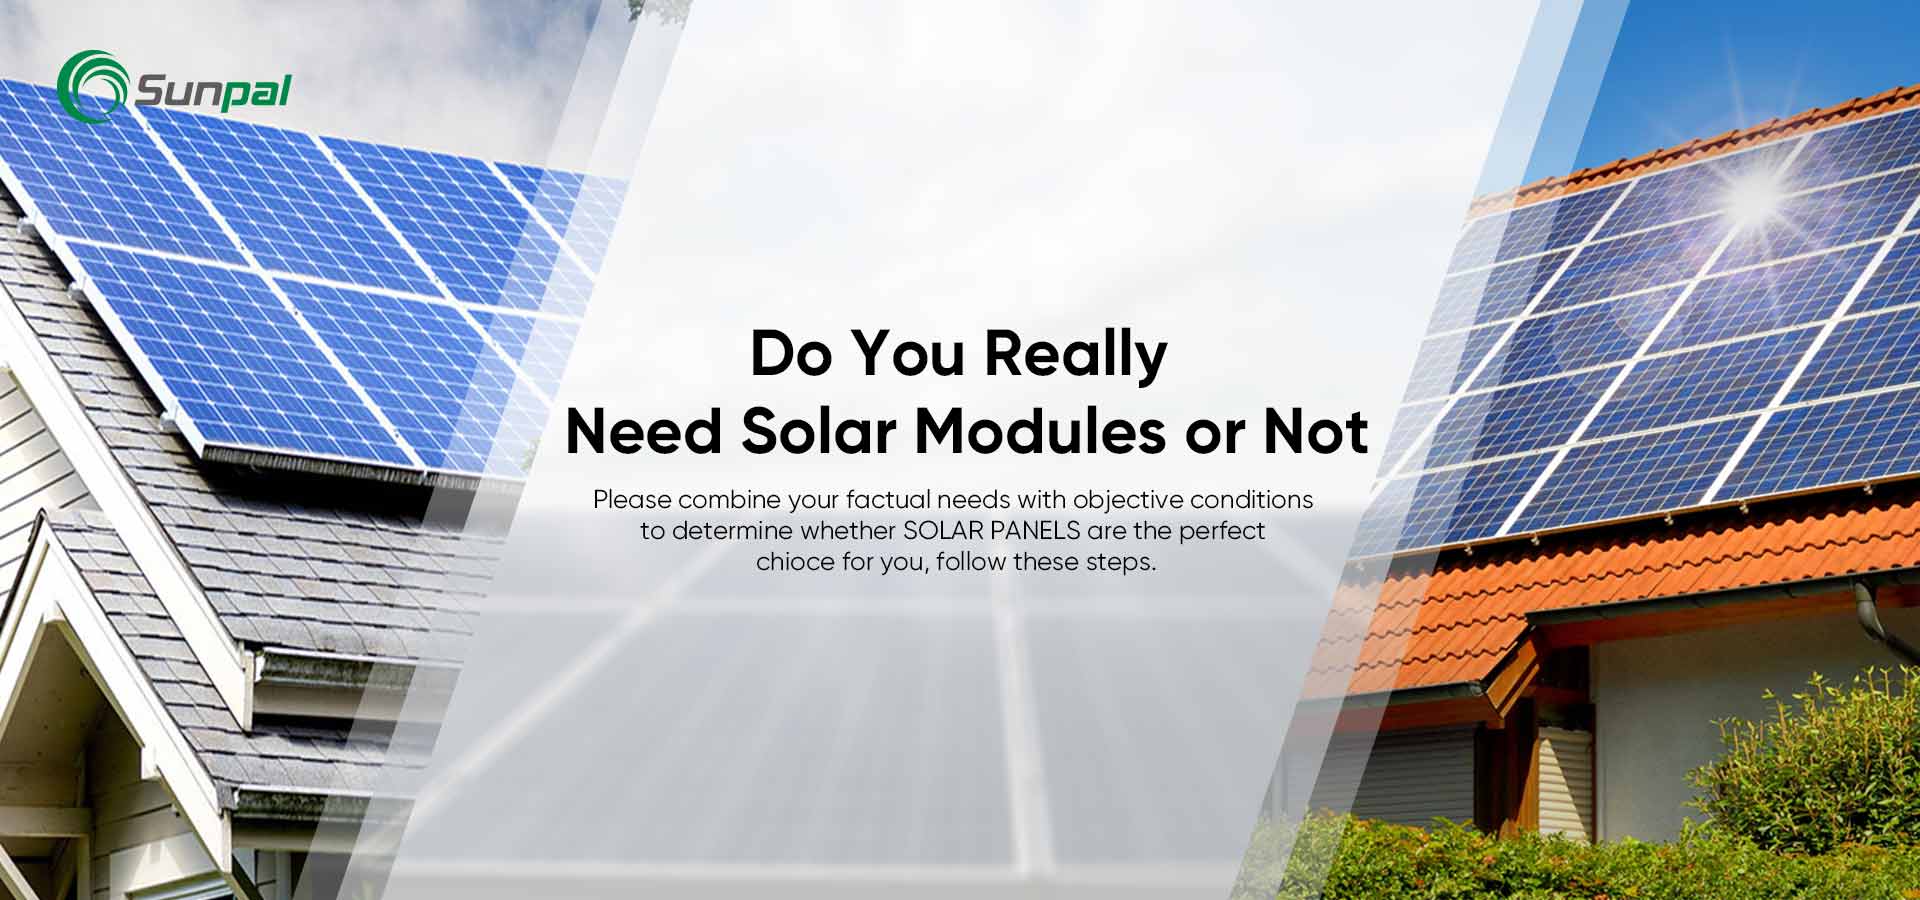 Tấm pin mặt trời có phù hợp với bạn không? 8 dấu hiệu bạn nên sử dụng năng lượng mặt trời